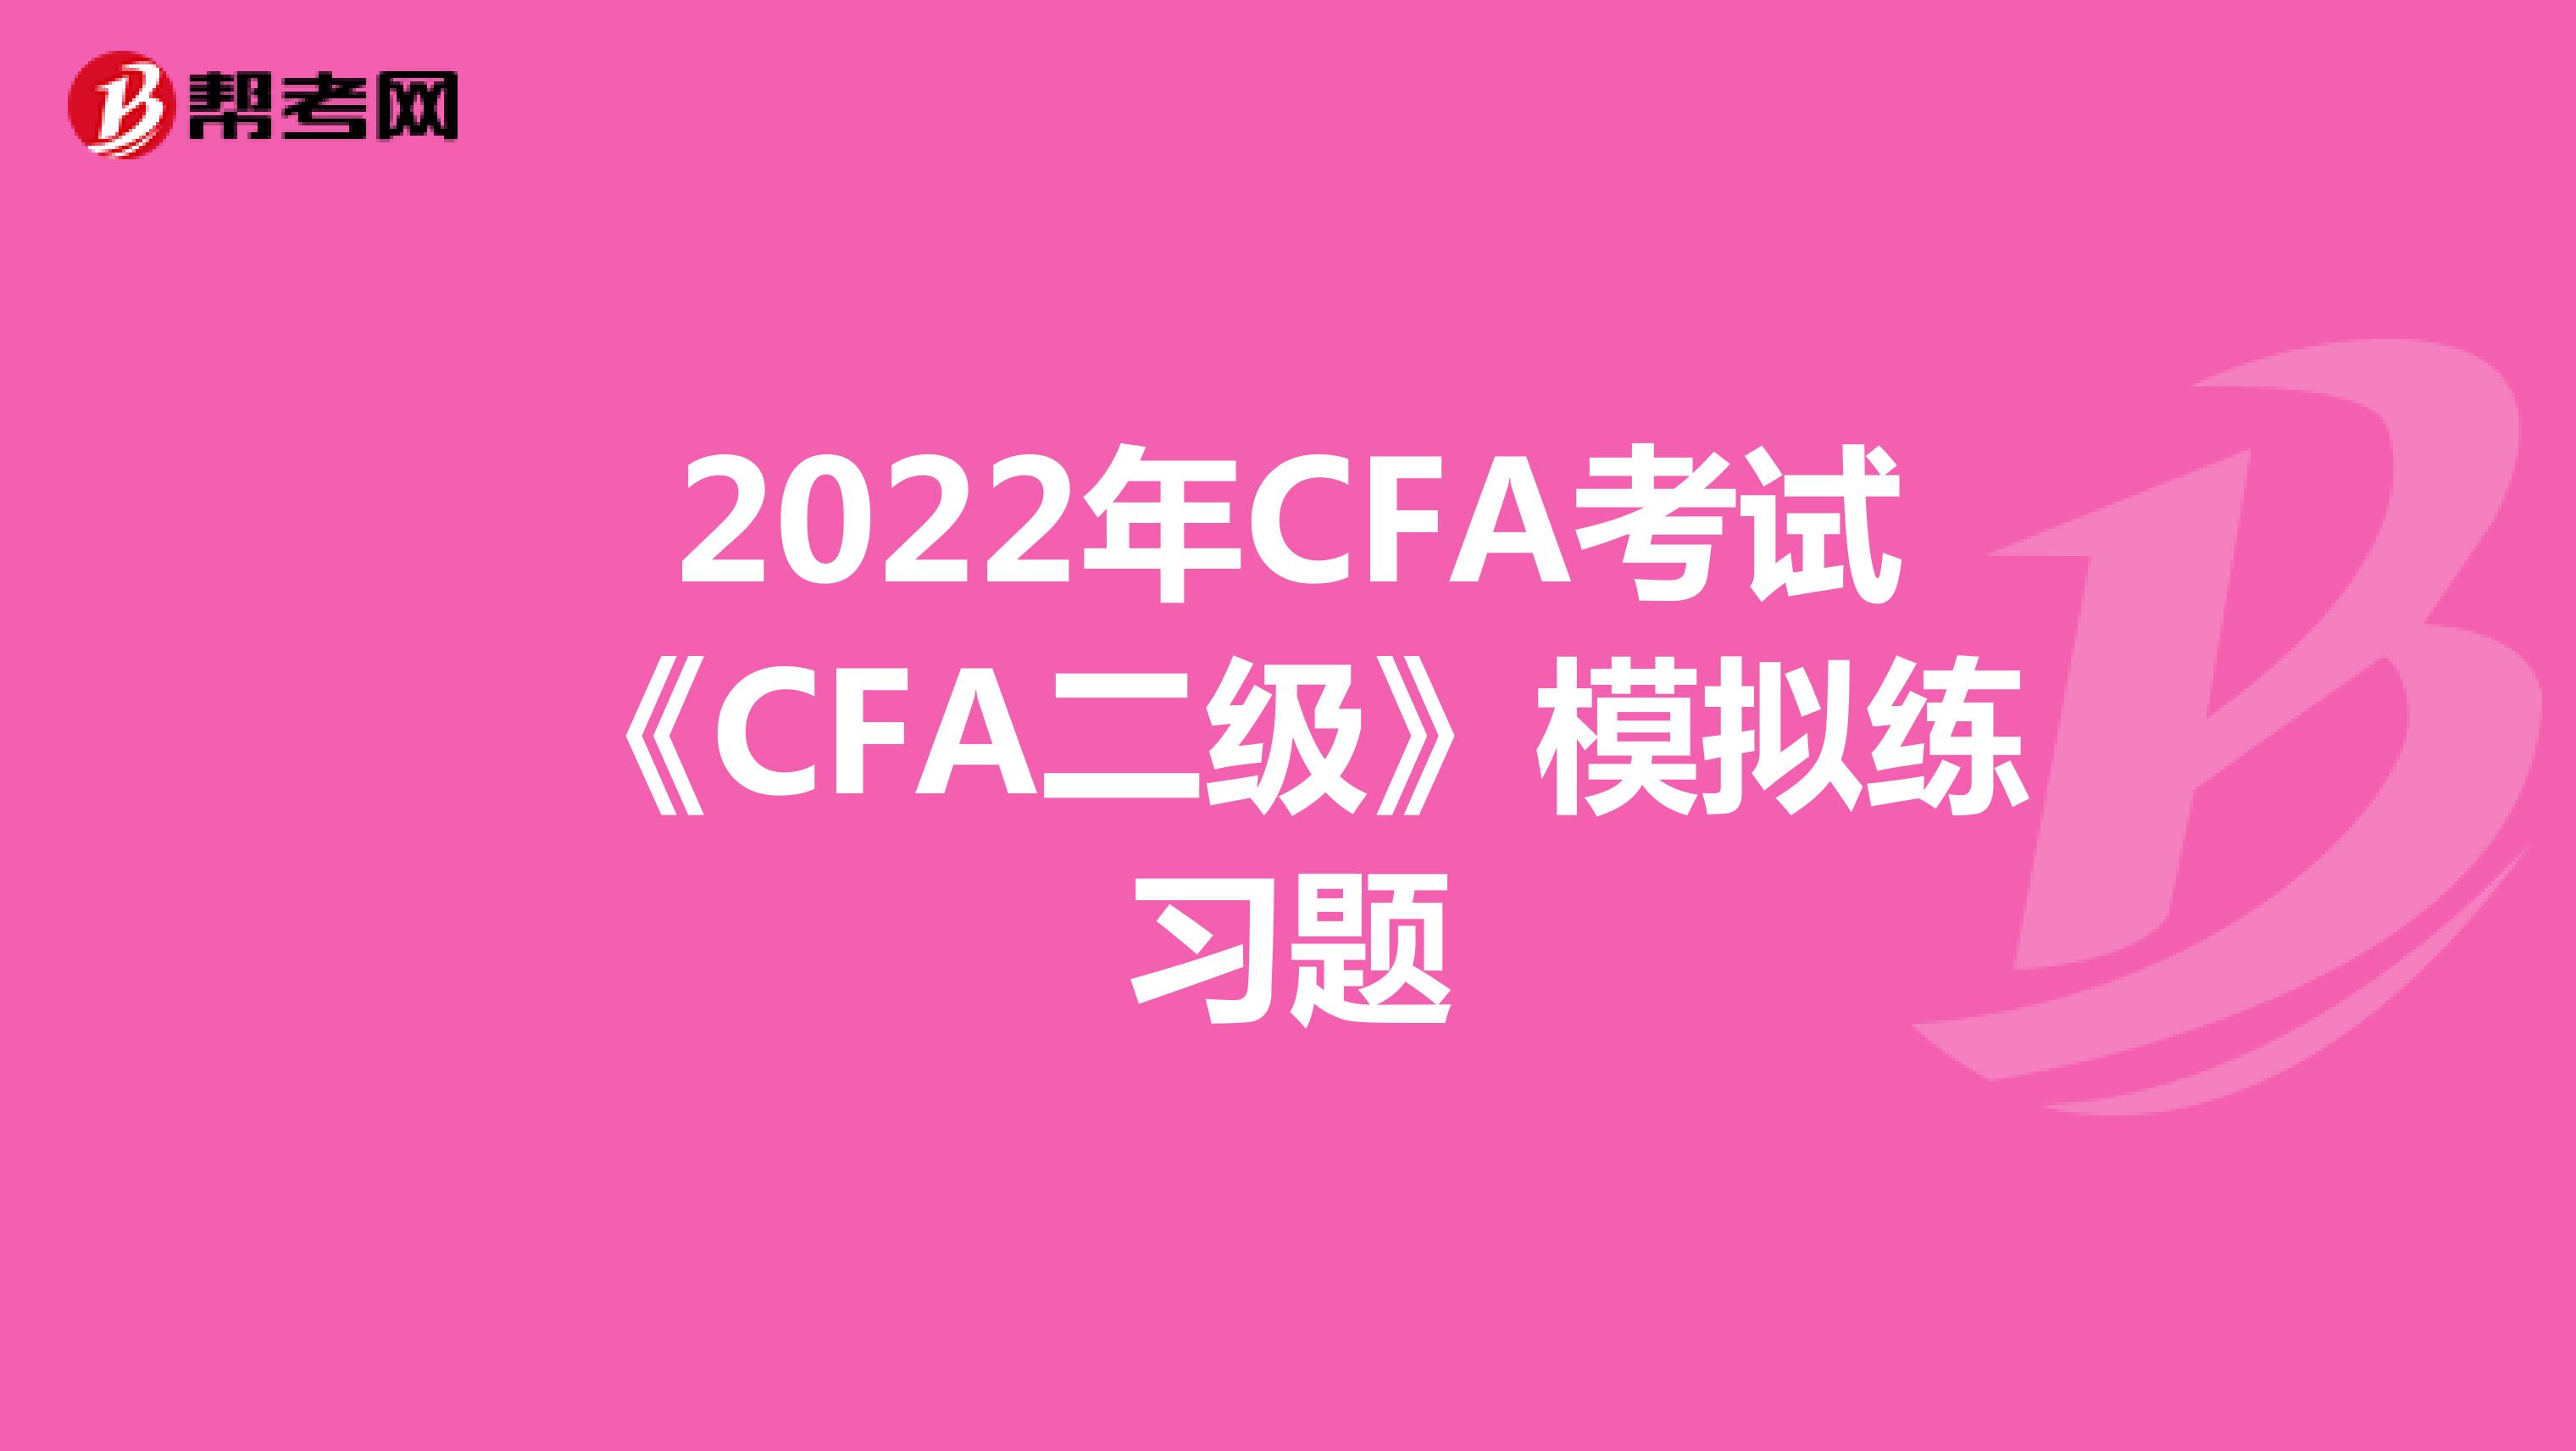 2022年CFA考试《CFA二级》模拟练习题